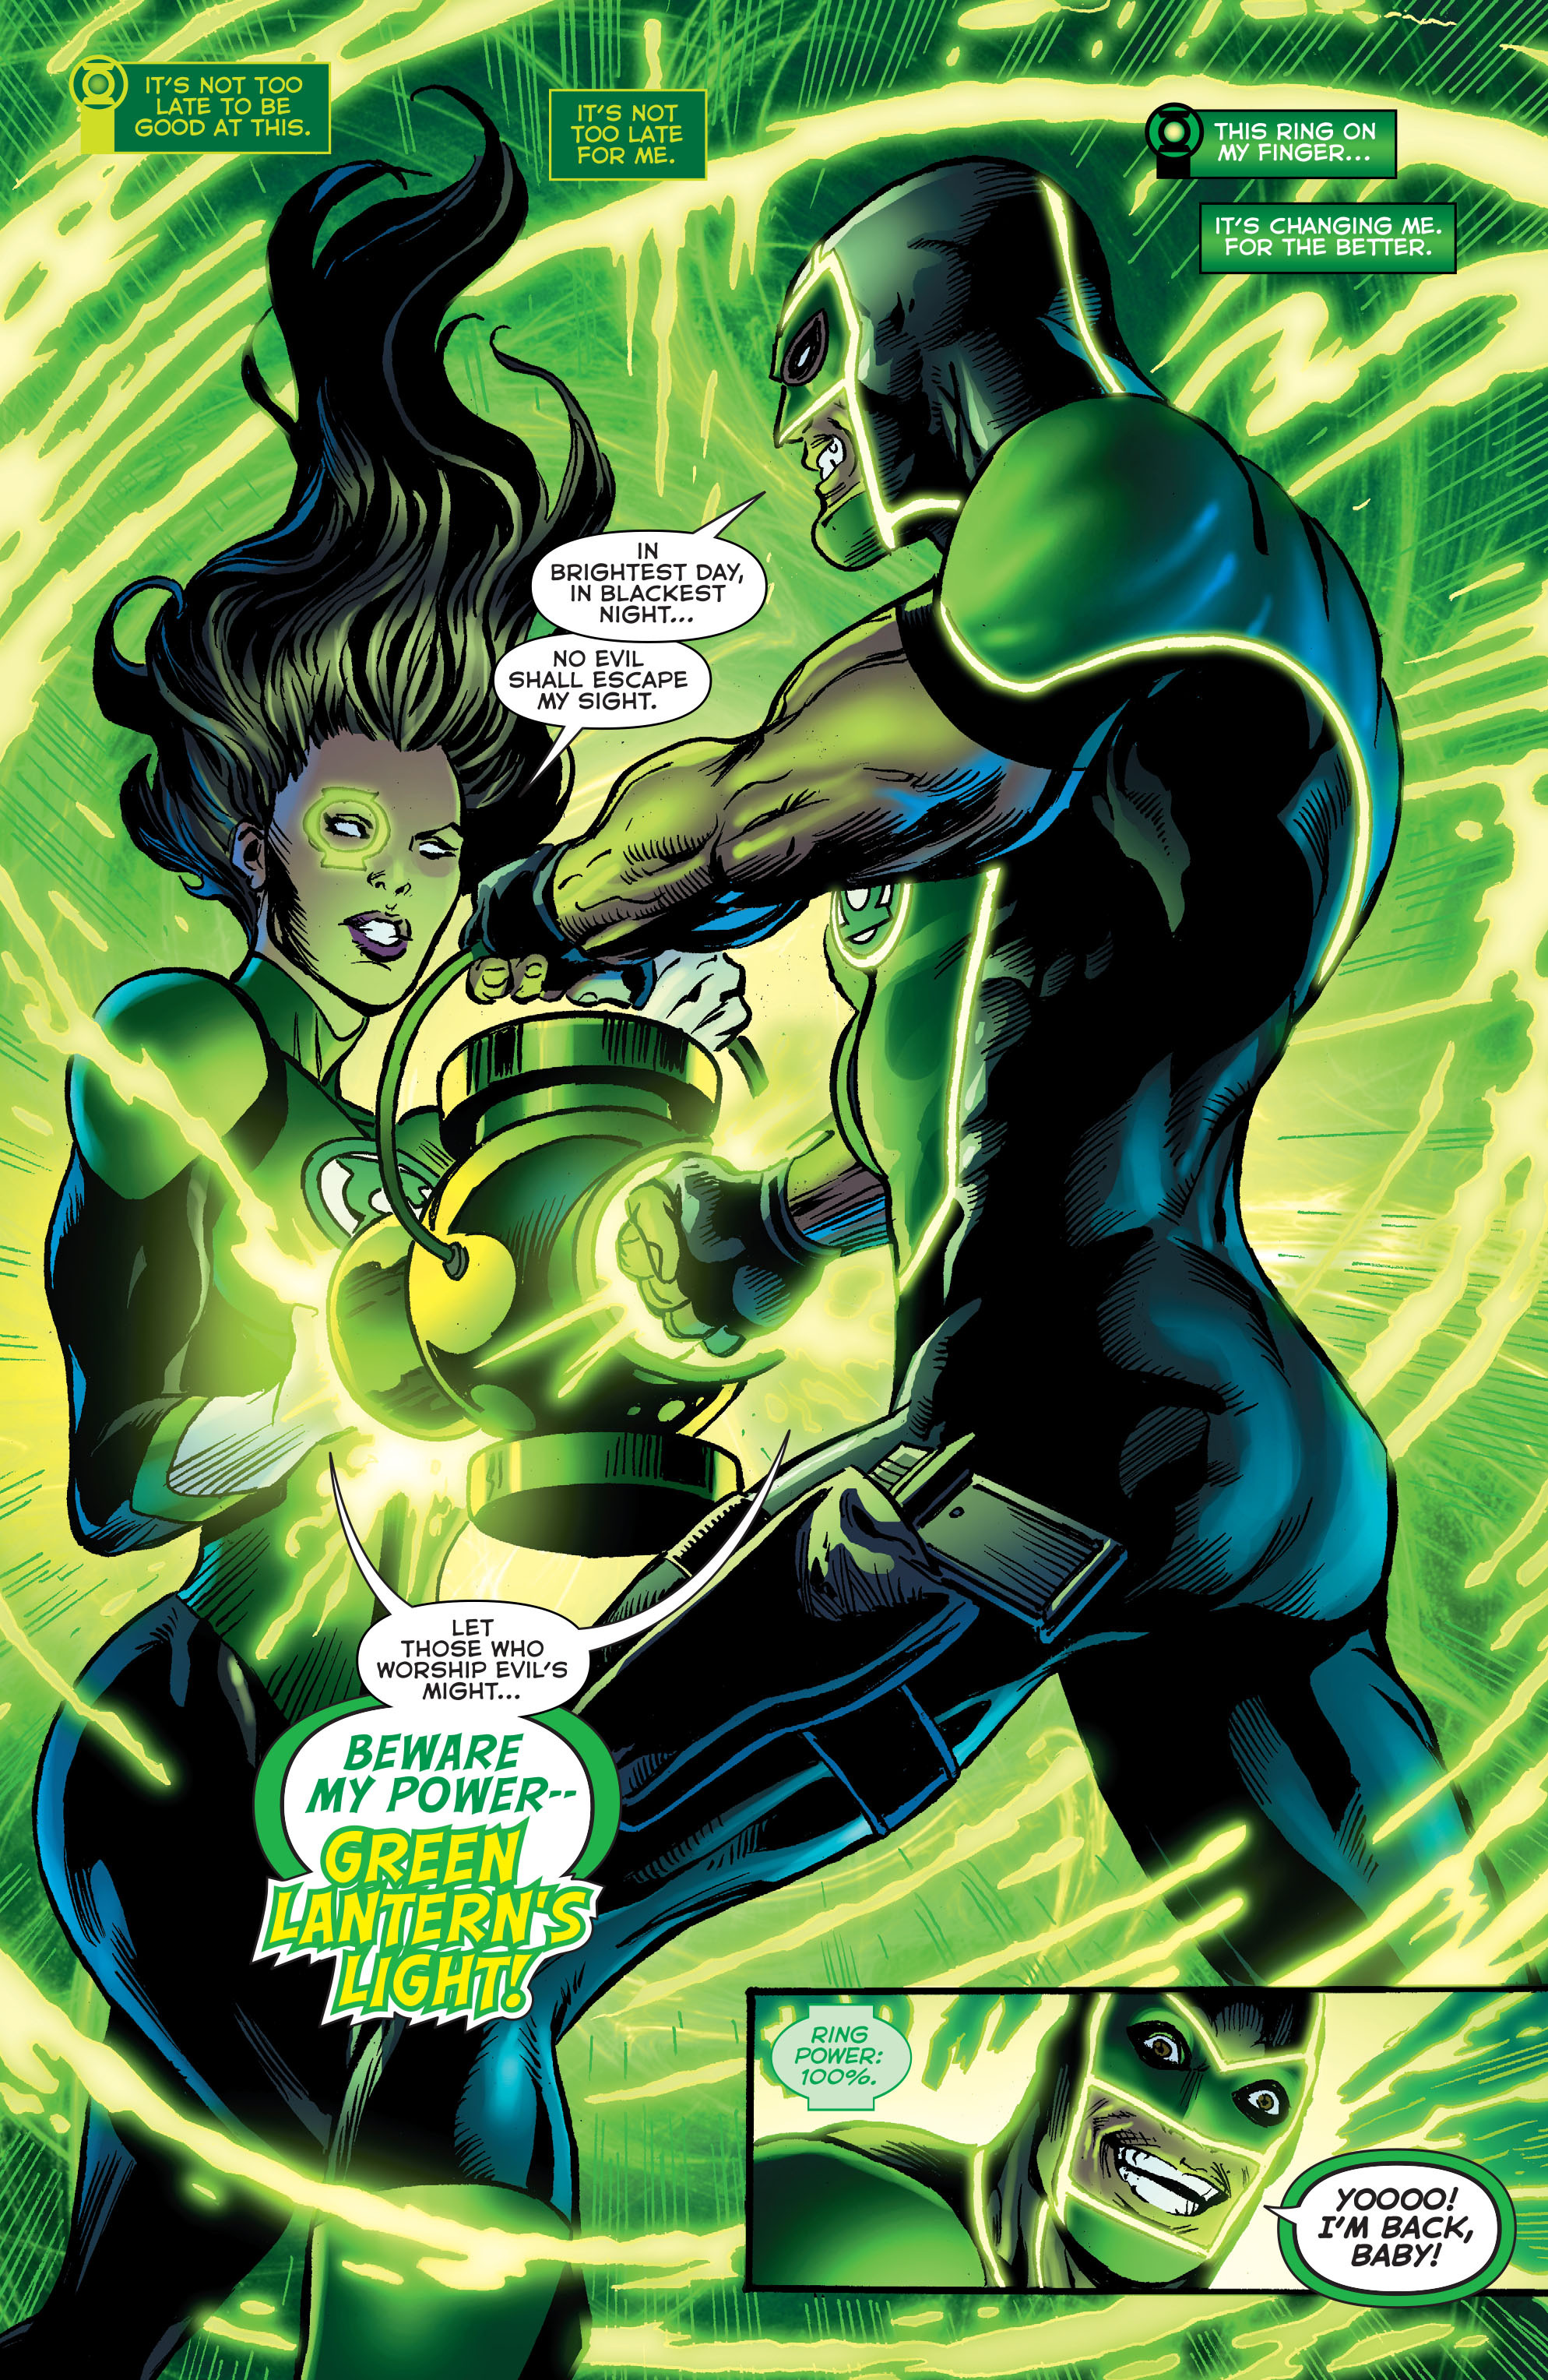 Green Lanterns #4 Review!